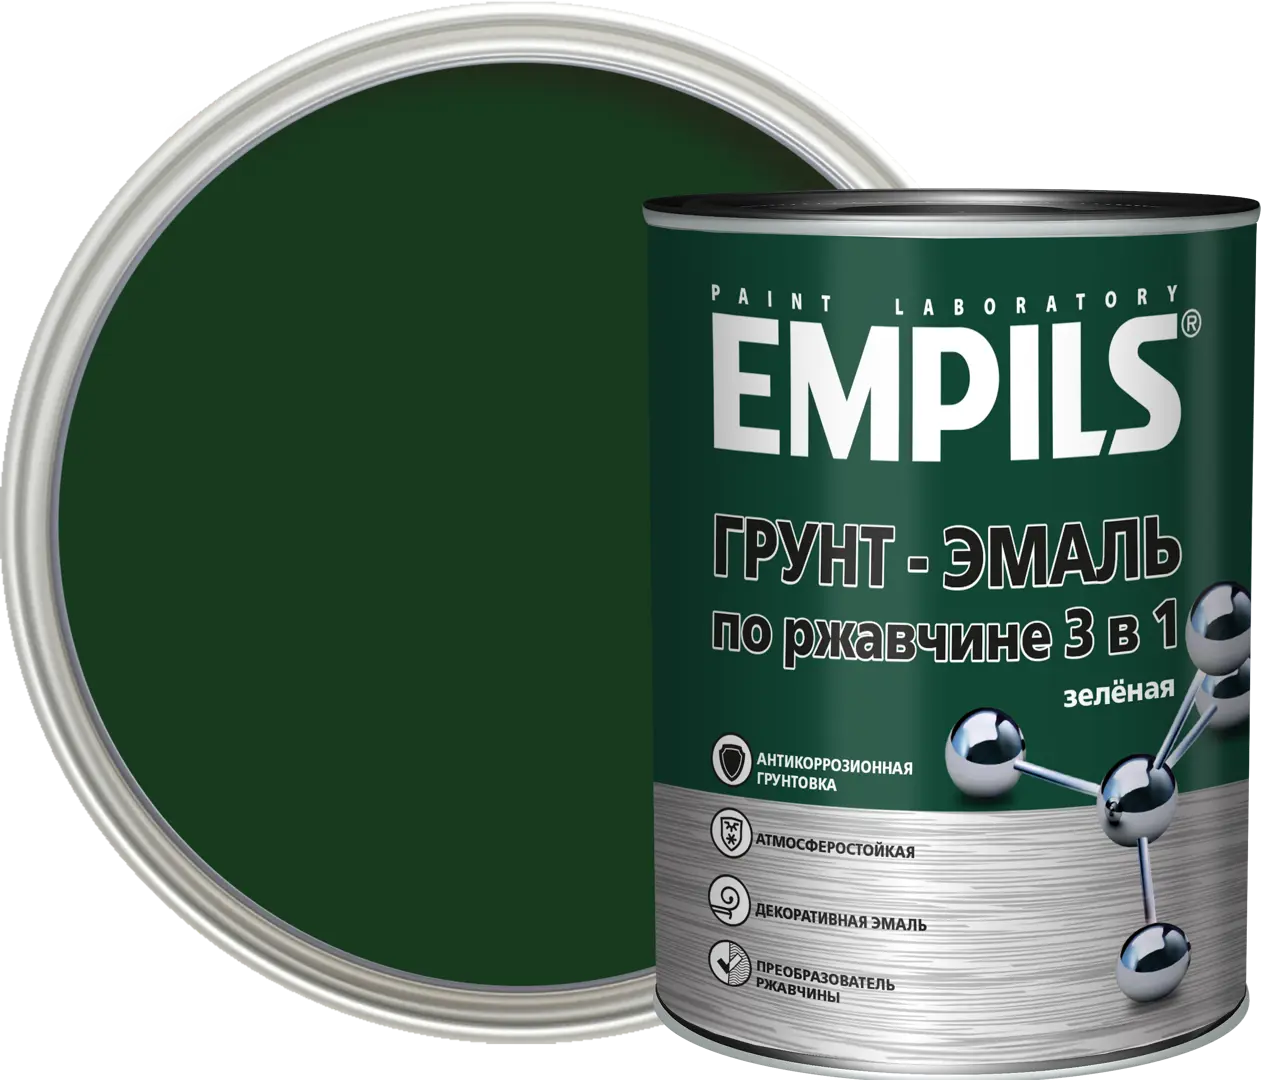 Грунт-эмаль по ржавчине 3 в 1 Empils PL цвет зеленый 0.9 кг аэрозольный алкидный грунт rayday